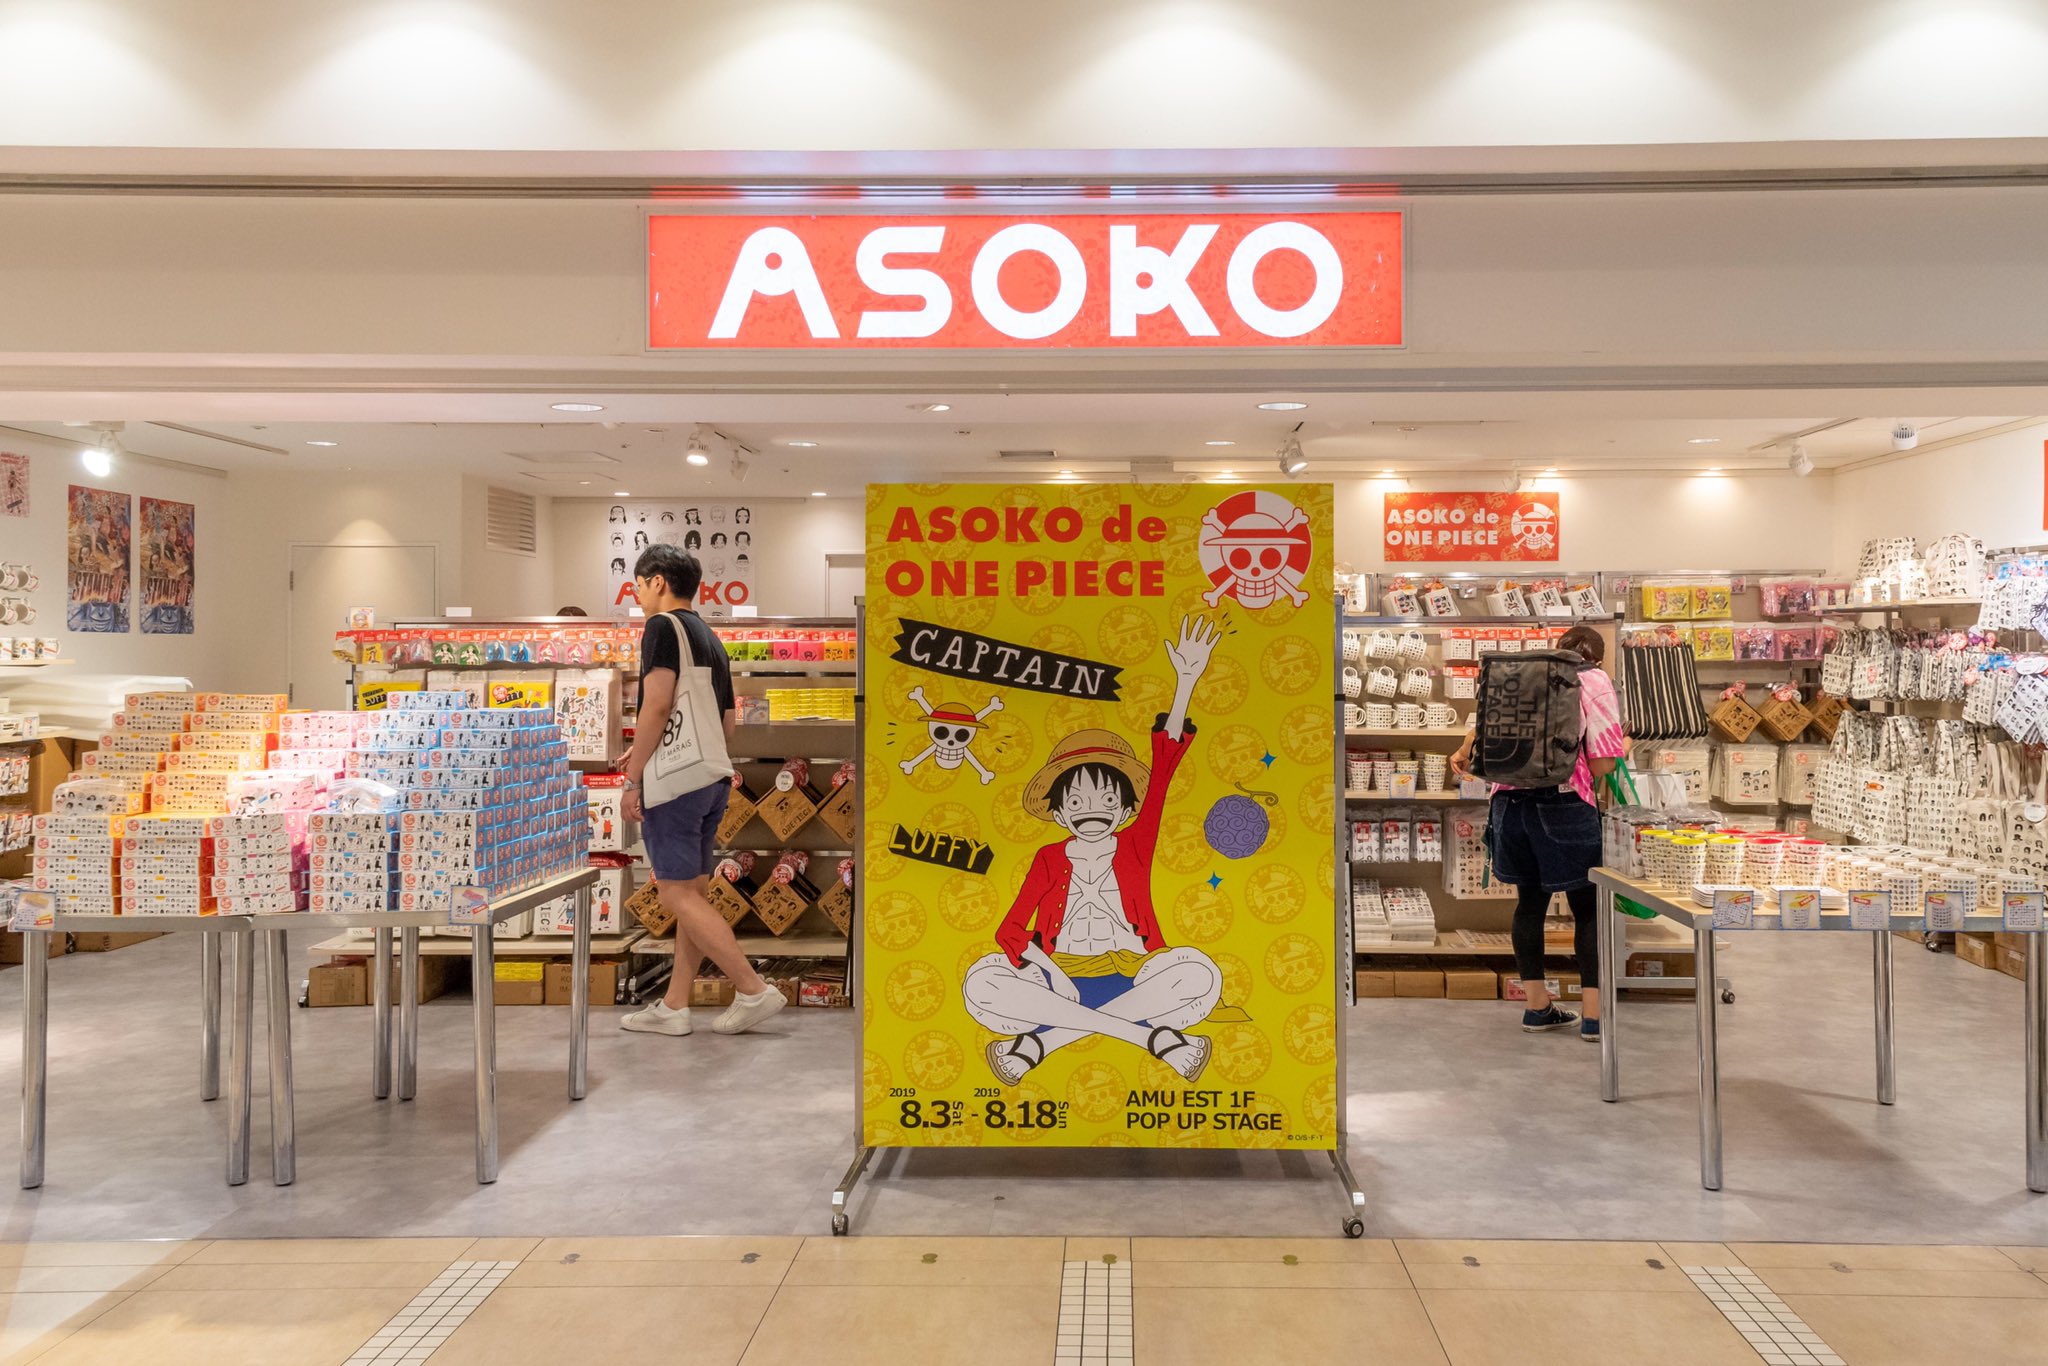 ａｍｕ ａｍｕ Est Asoko 期間限定オープン 劇場版アニメ One Piece Stampede の公開を記念し ワンピースと ユニークな雑貨を数多く揃えるasokoがコラボレーションしました 皆さまのご来店お待ちしております 期間 8月3日 土 8月